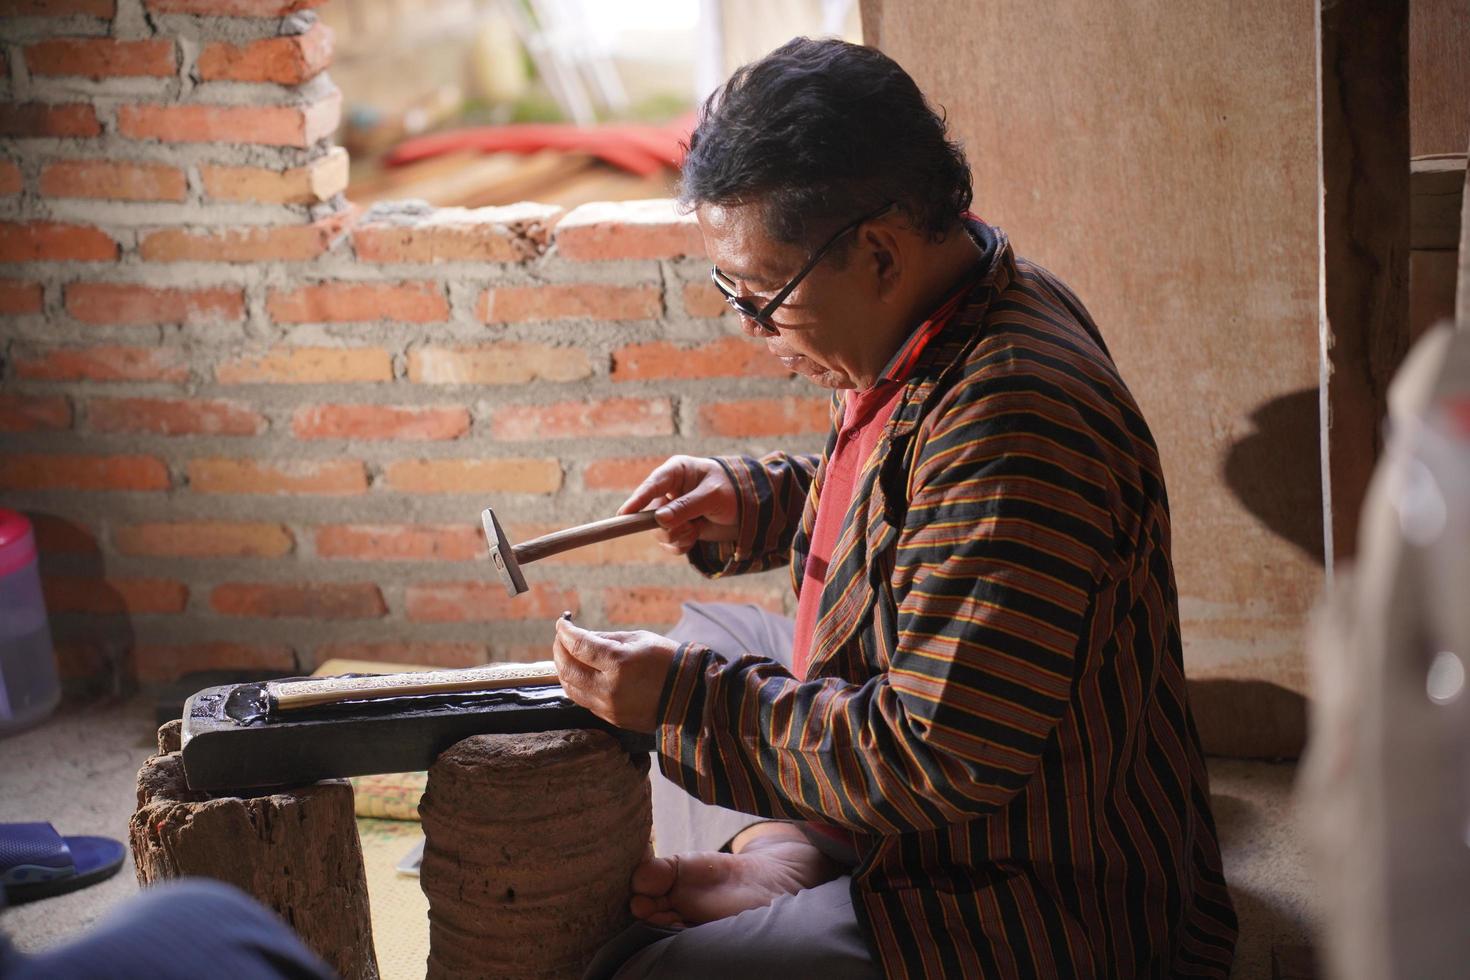 artesanos de keris en el taller, en el proceso de elaboración de keris. bantul, indonesia - 25 agosto 2022 foto